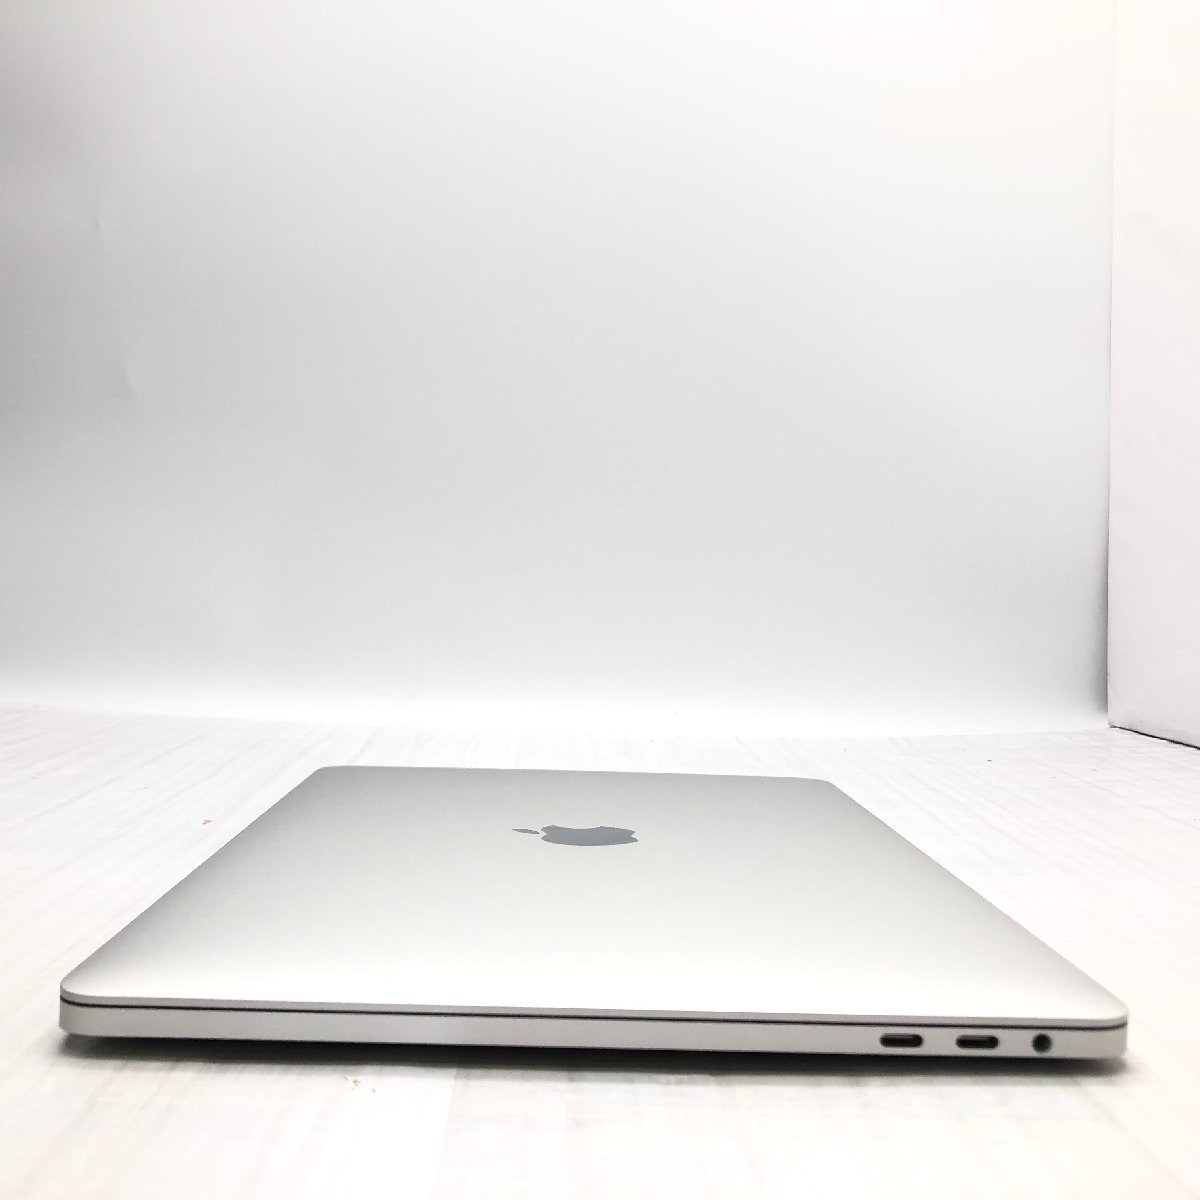 難あり】 Apple MacBook Pro 13inch 2019 Four Thunderbolt 3 Ports